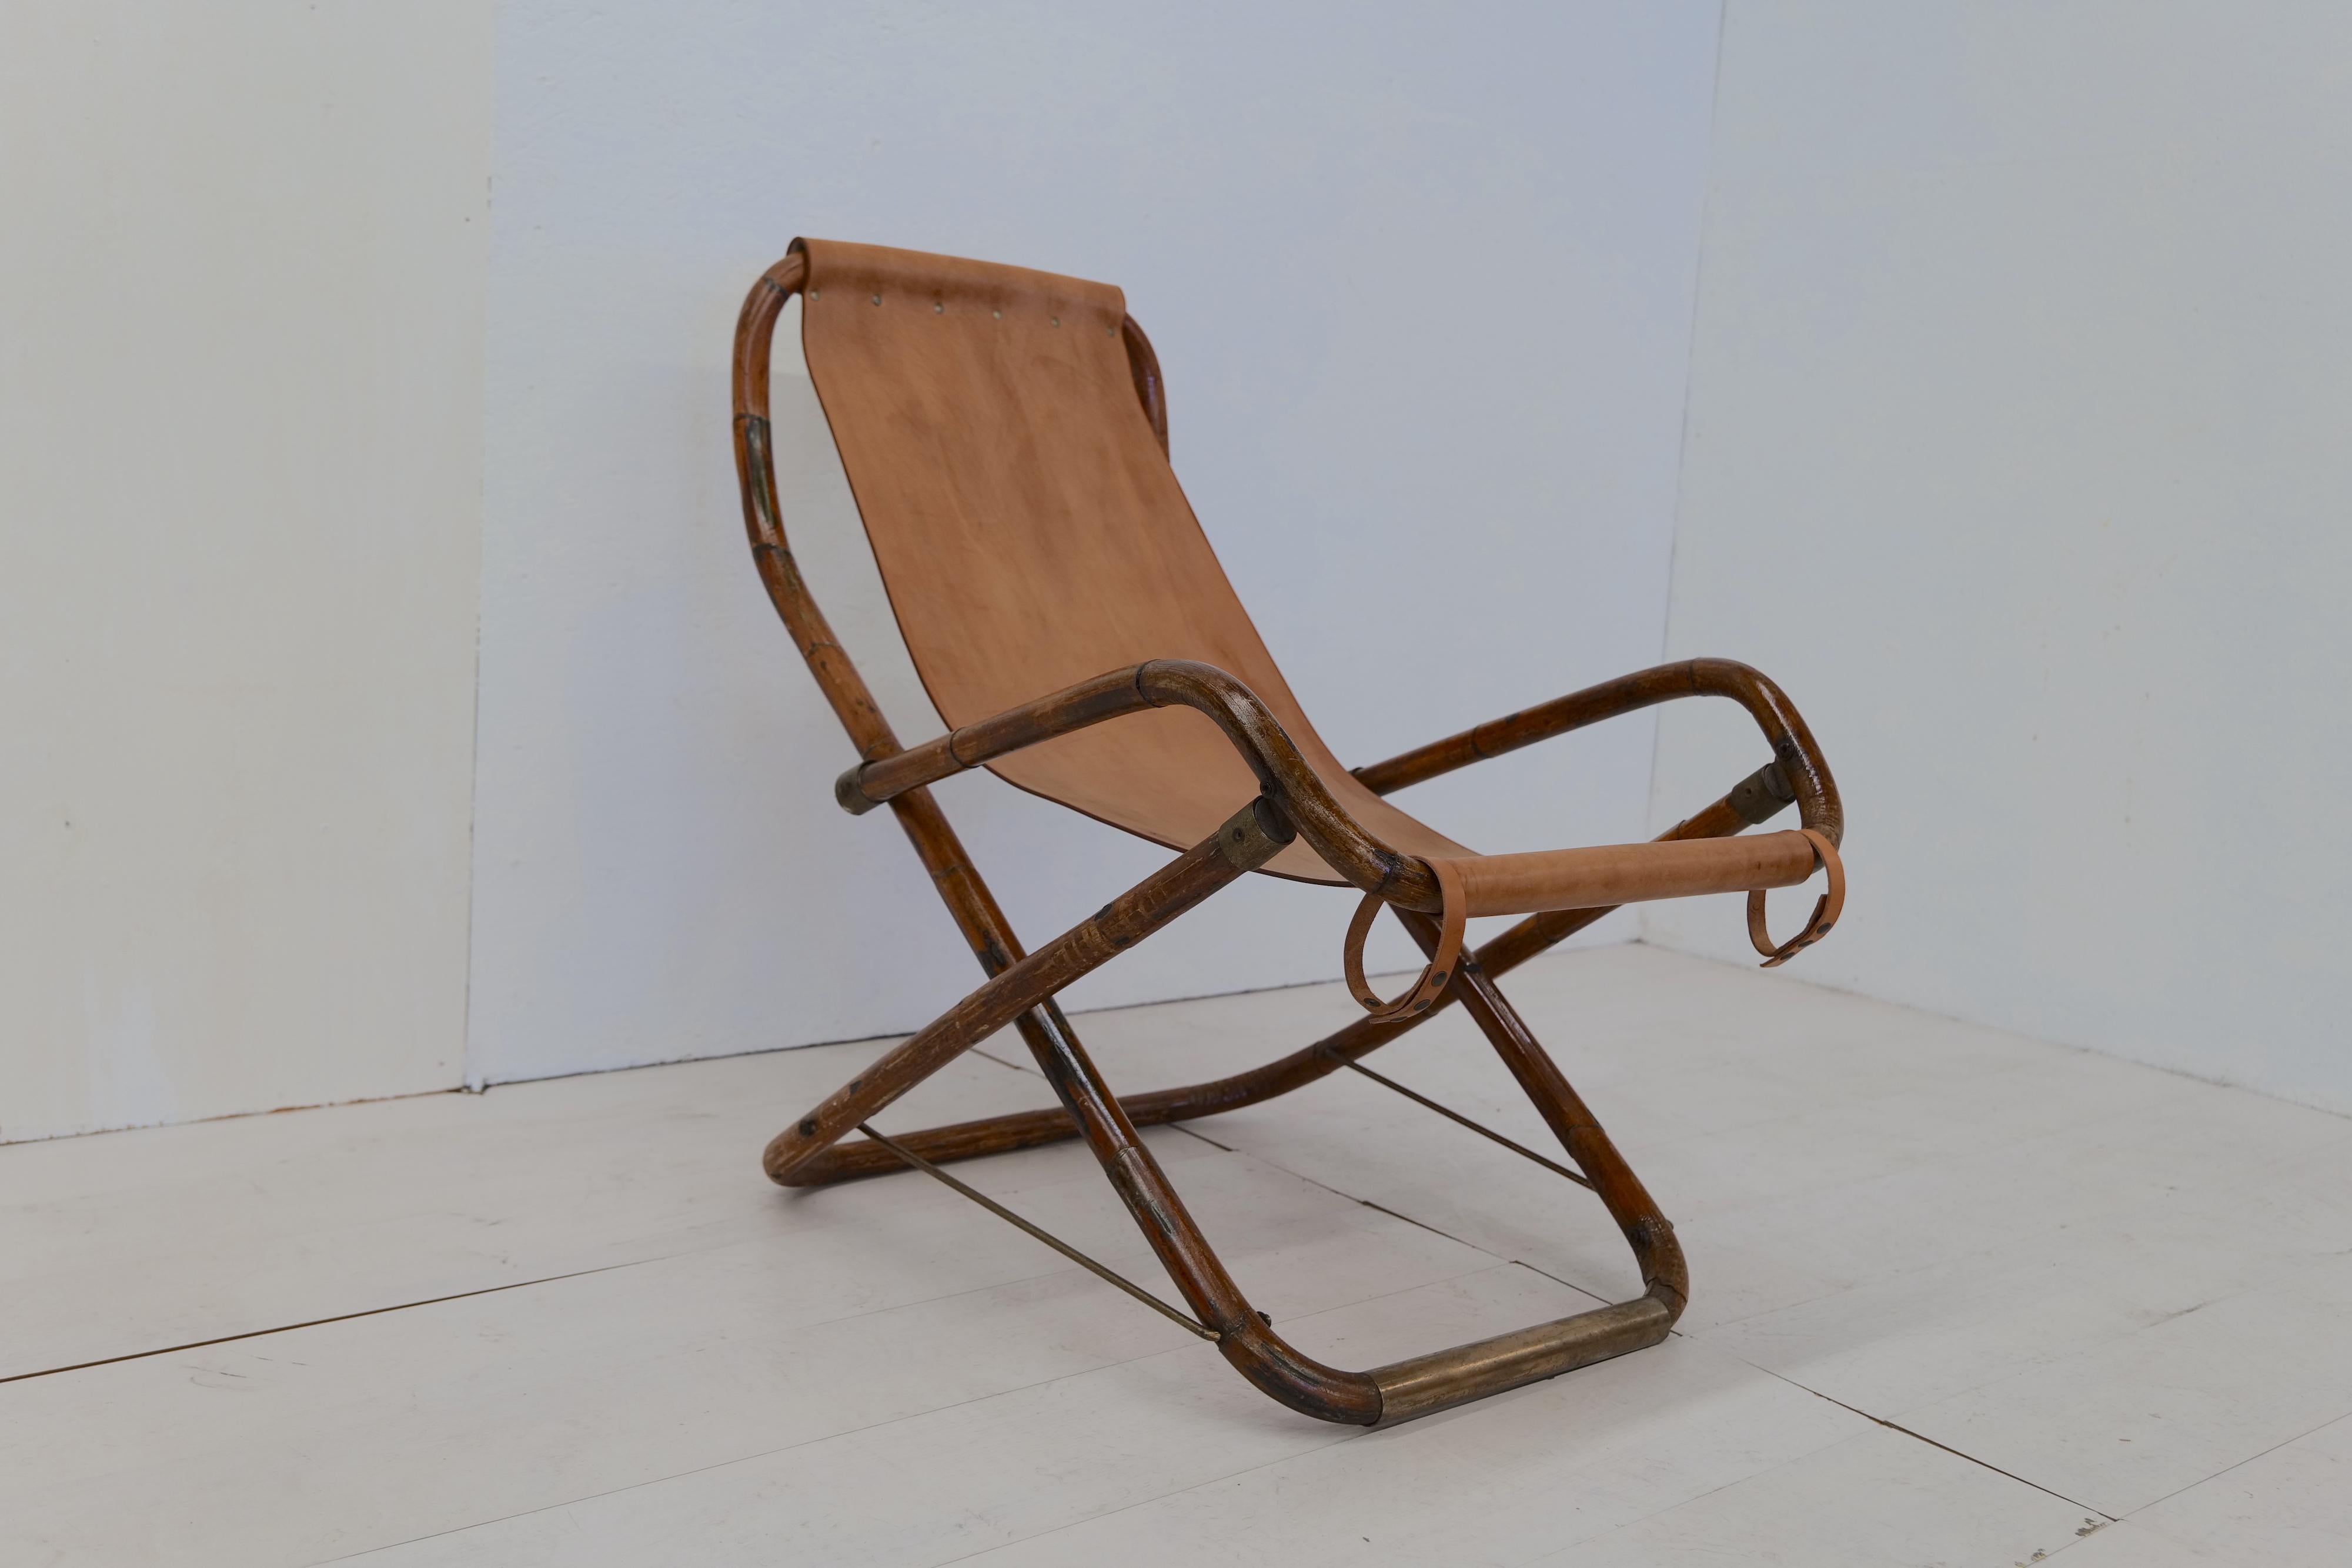 Der Vintage Italian Leather and Wood Rocking Chair aus den 1960er Jahren ist ein klassisches, in Italien hergestelltes Möbelstück. Er verfügt über einen stabilen Holzrahmen mit eleganten Kurven und Details, kombiniert mit einem bequemen Sitz und